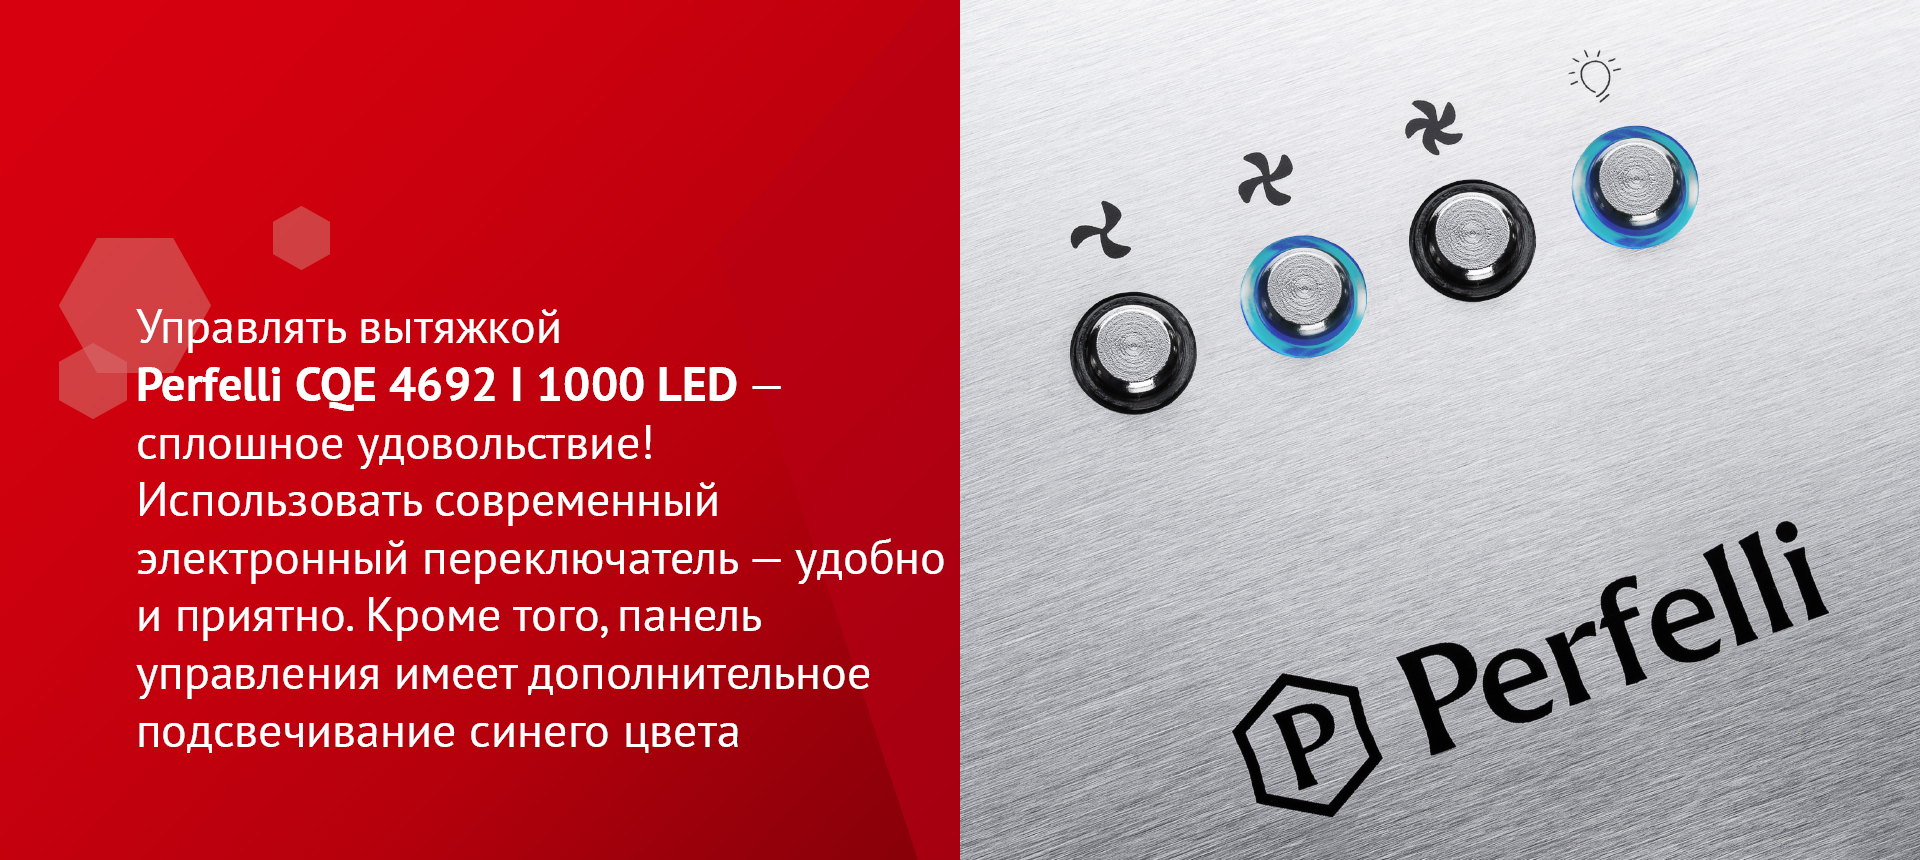 Управлять вытяжкой Perfelli CQE 4692 I 1000 LED – сплошное удовольствие! Использовать современный электронный переключатель – удобно и приятно. Кроме того, панель управления имеет дополнительное подсвечивание синего цвета